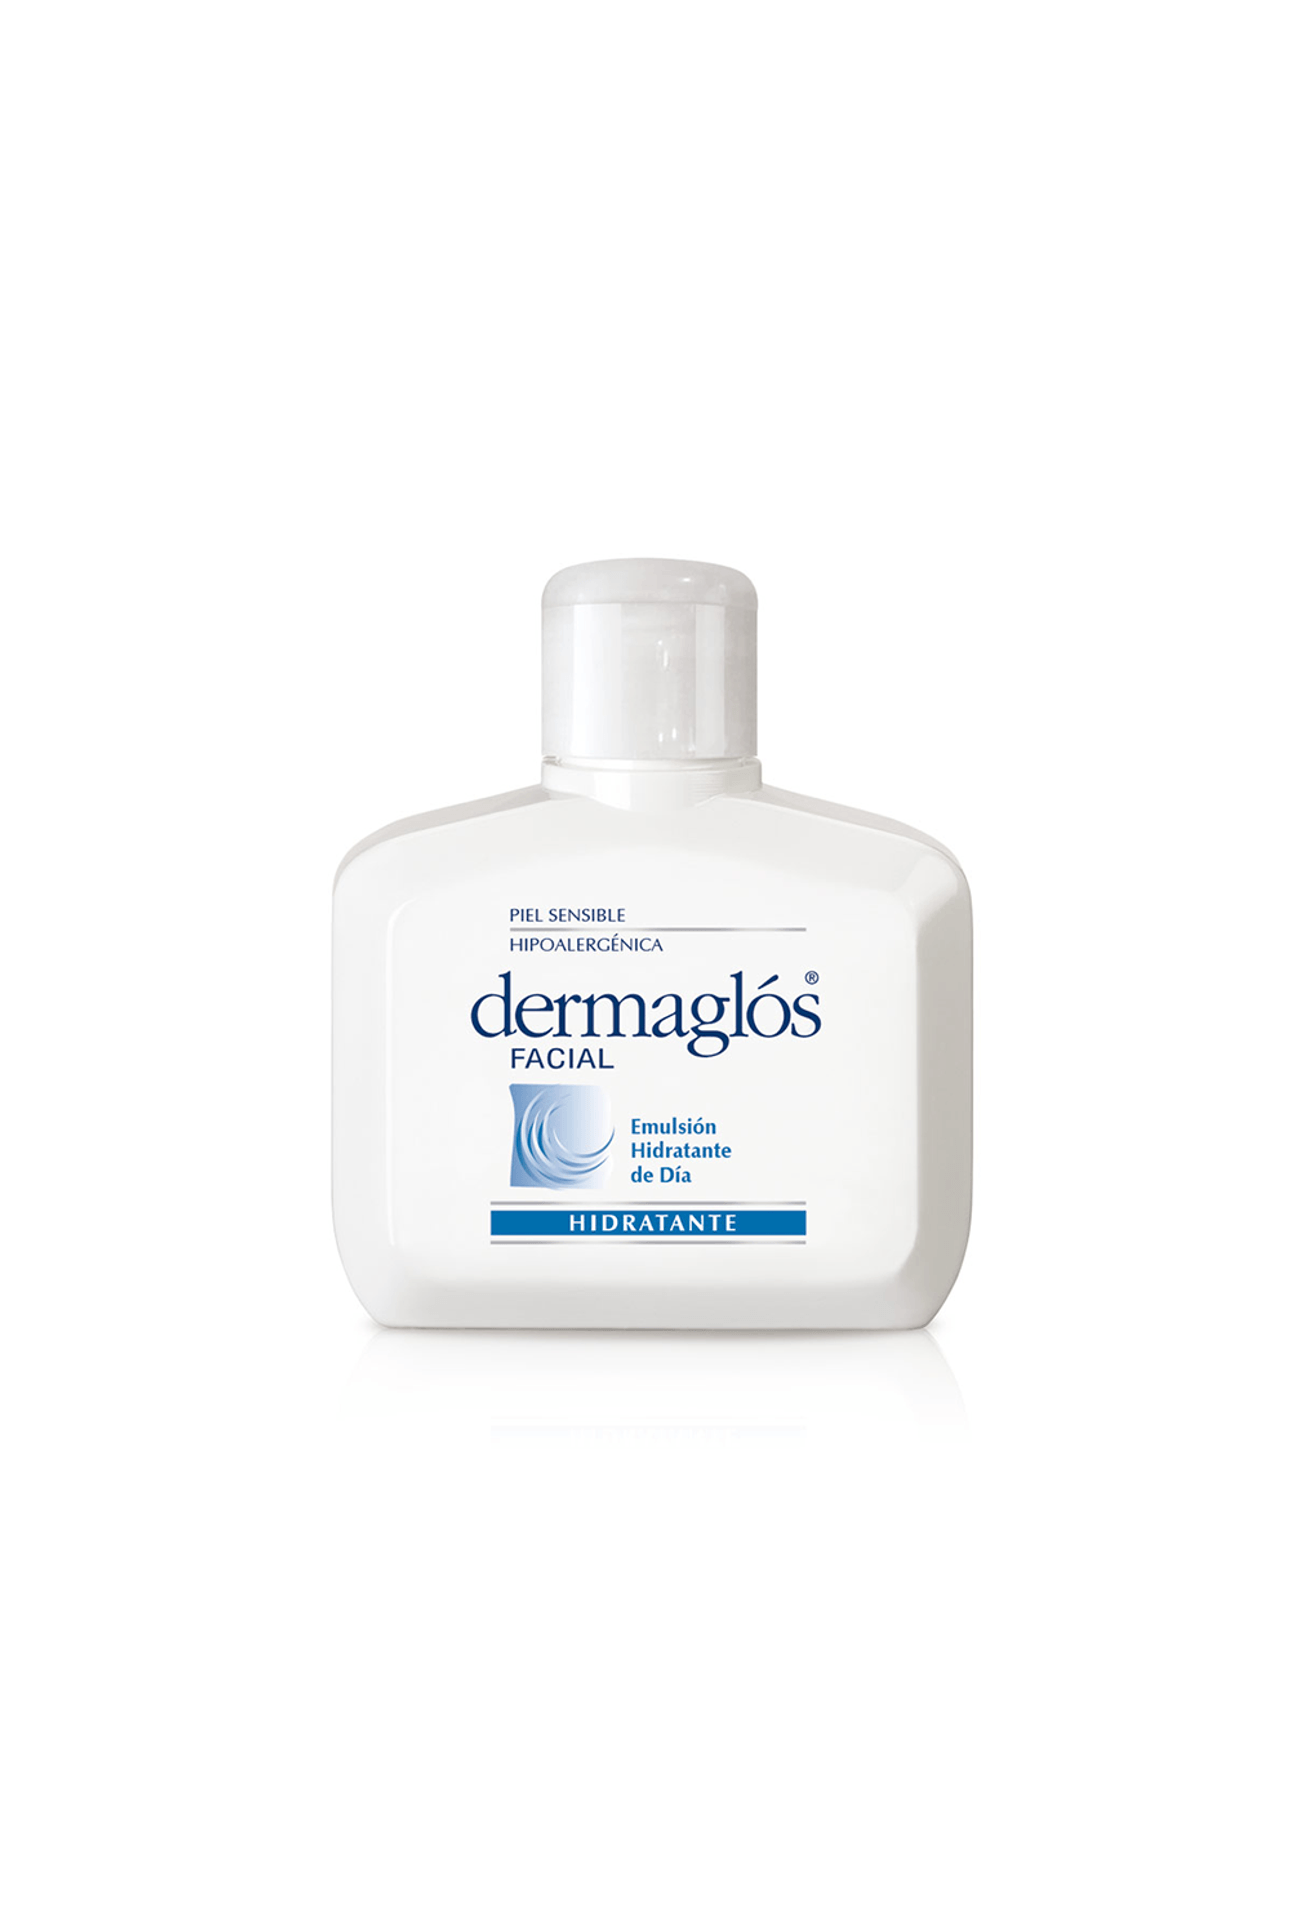 Dermaglos-28744_Dermaglos-Facial-Emulsion-Hidratante-de-Dia-Piel-Normal-a-Mixta-x-75-ml_img1-7793742007903